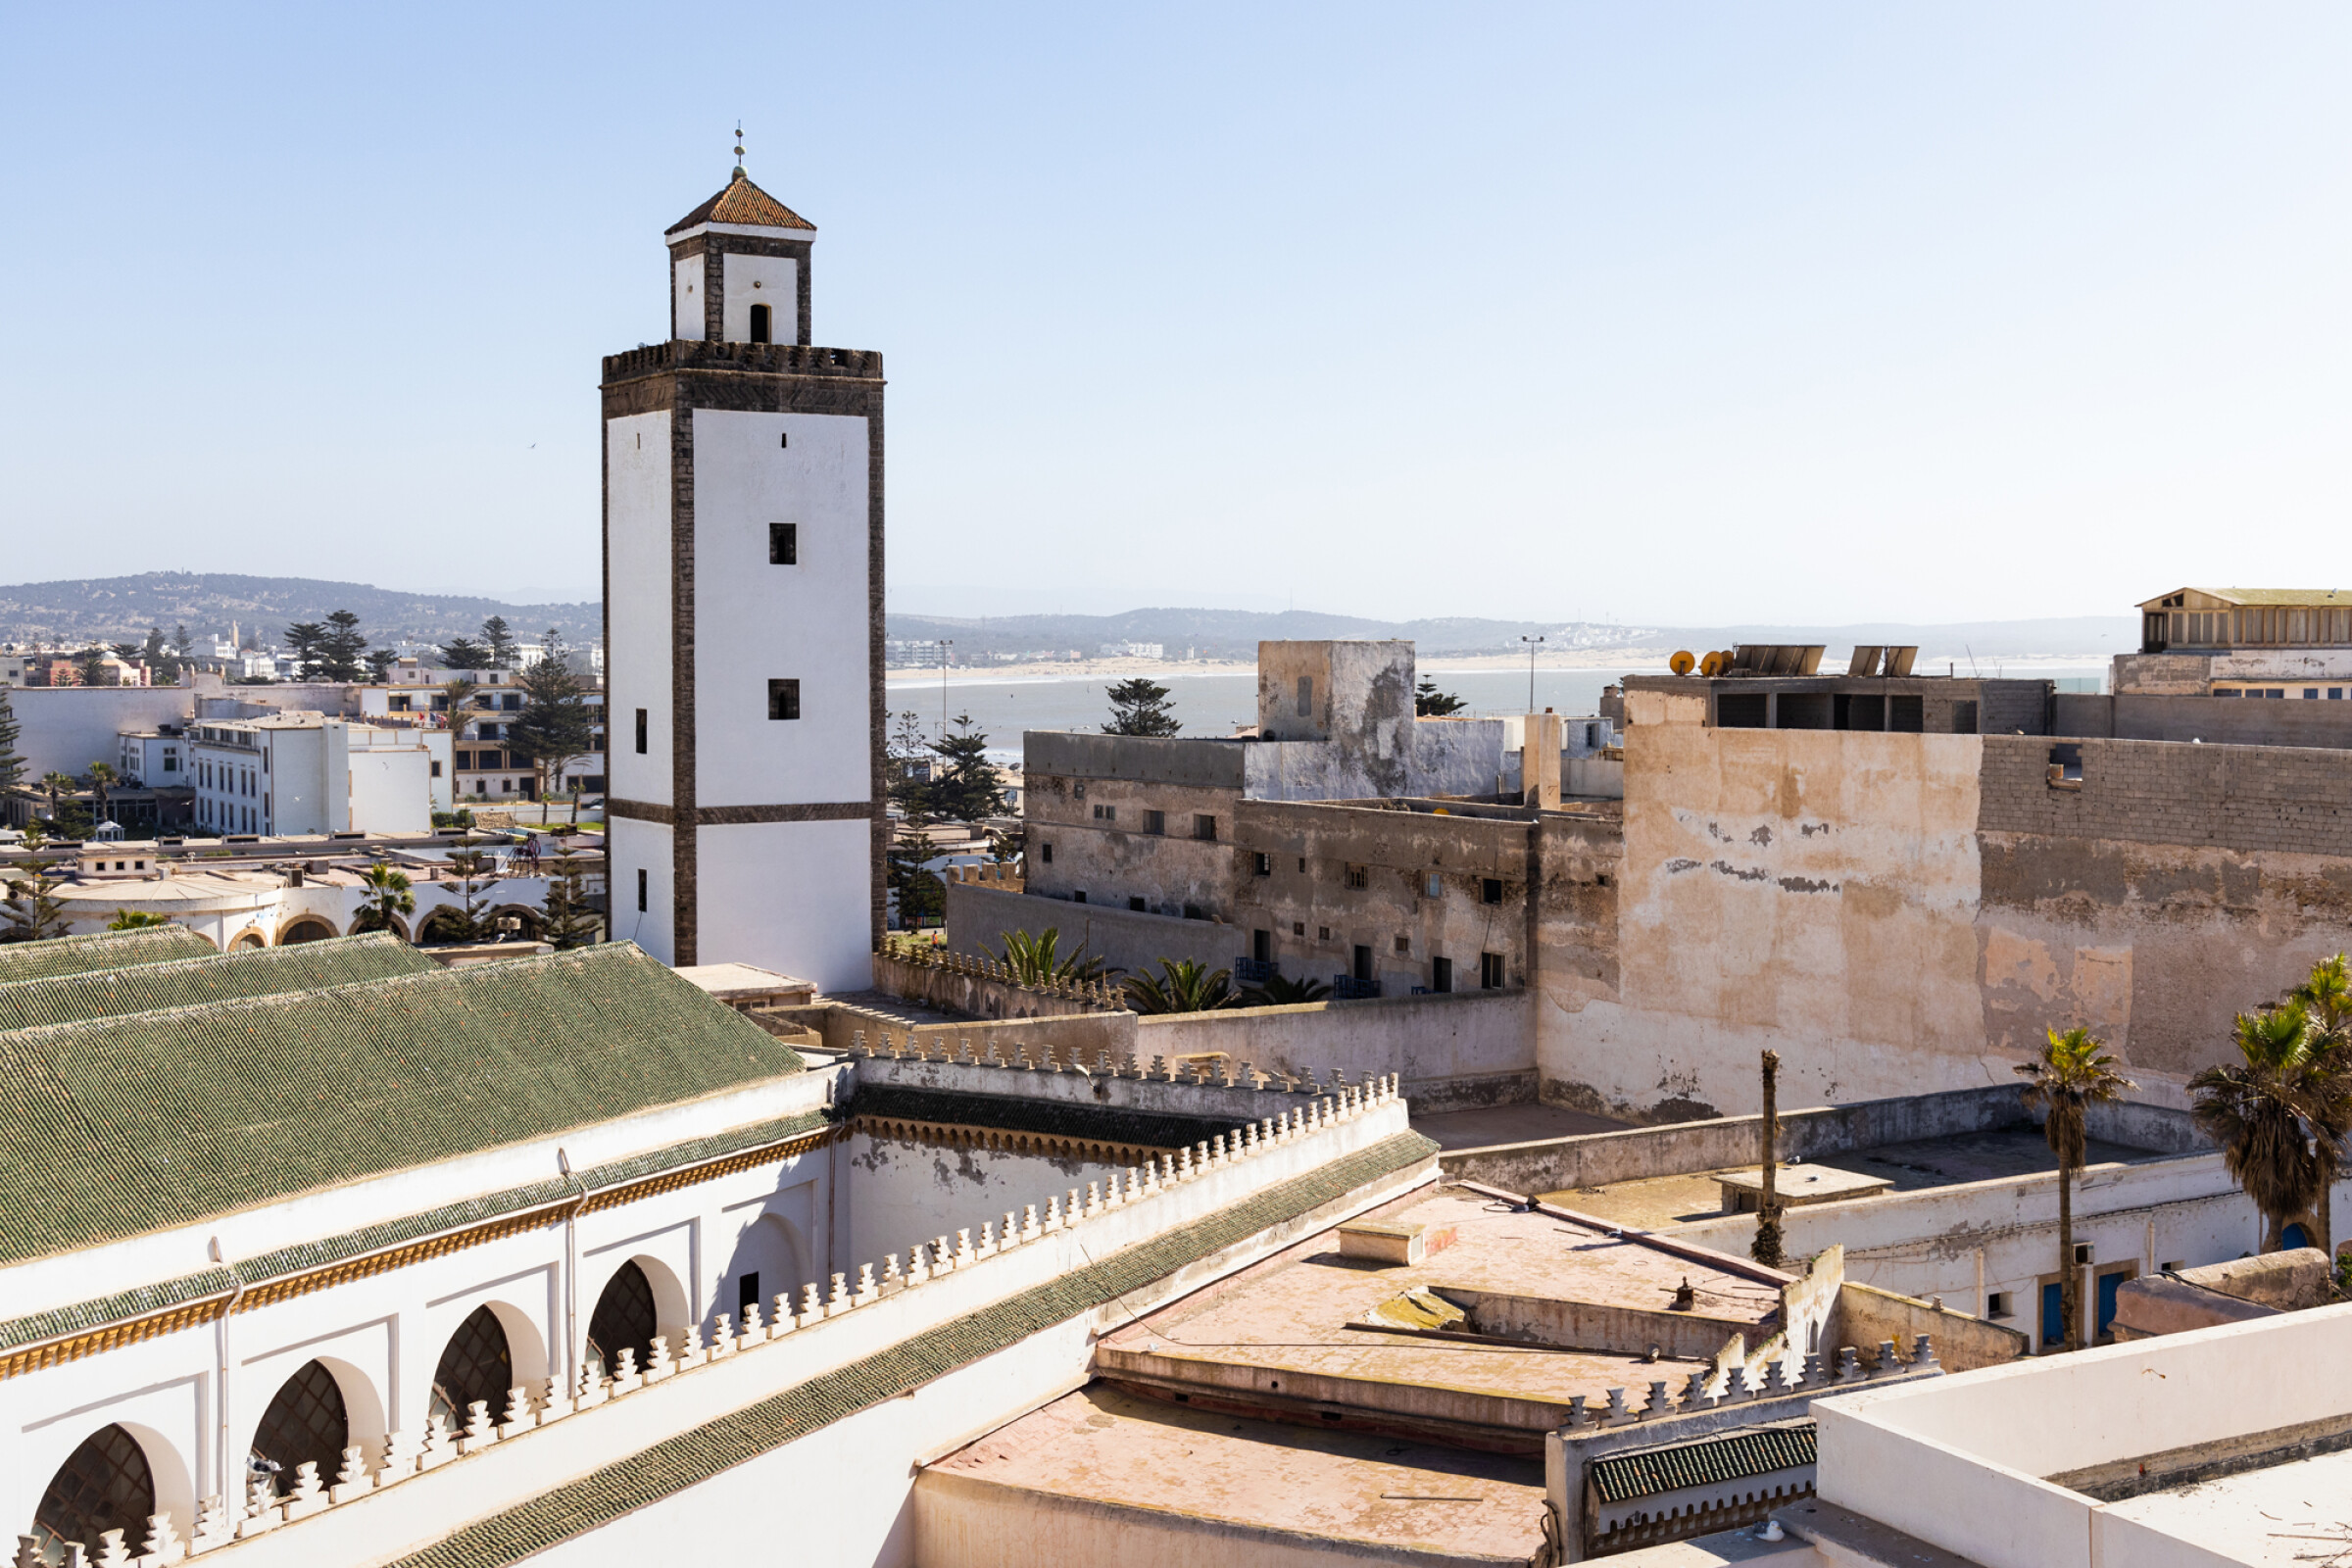 Vivez l'expérience d'observation des oiseaux à Essaouira